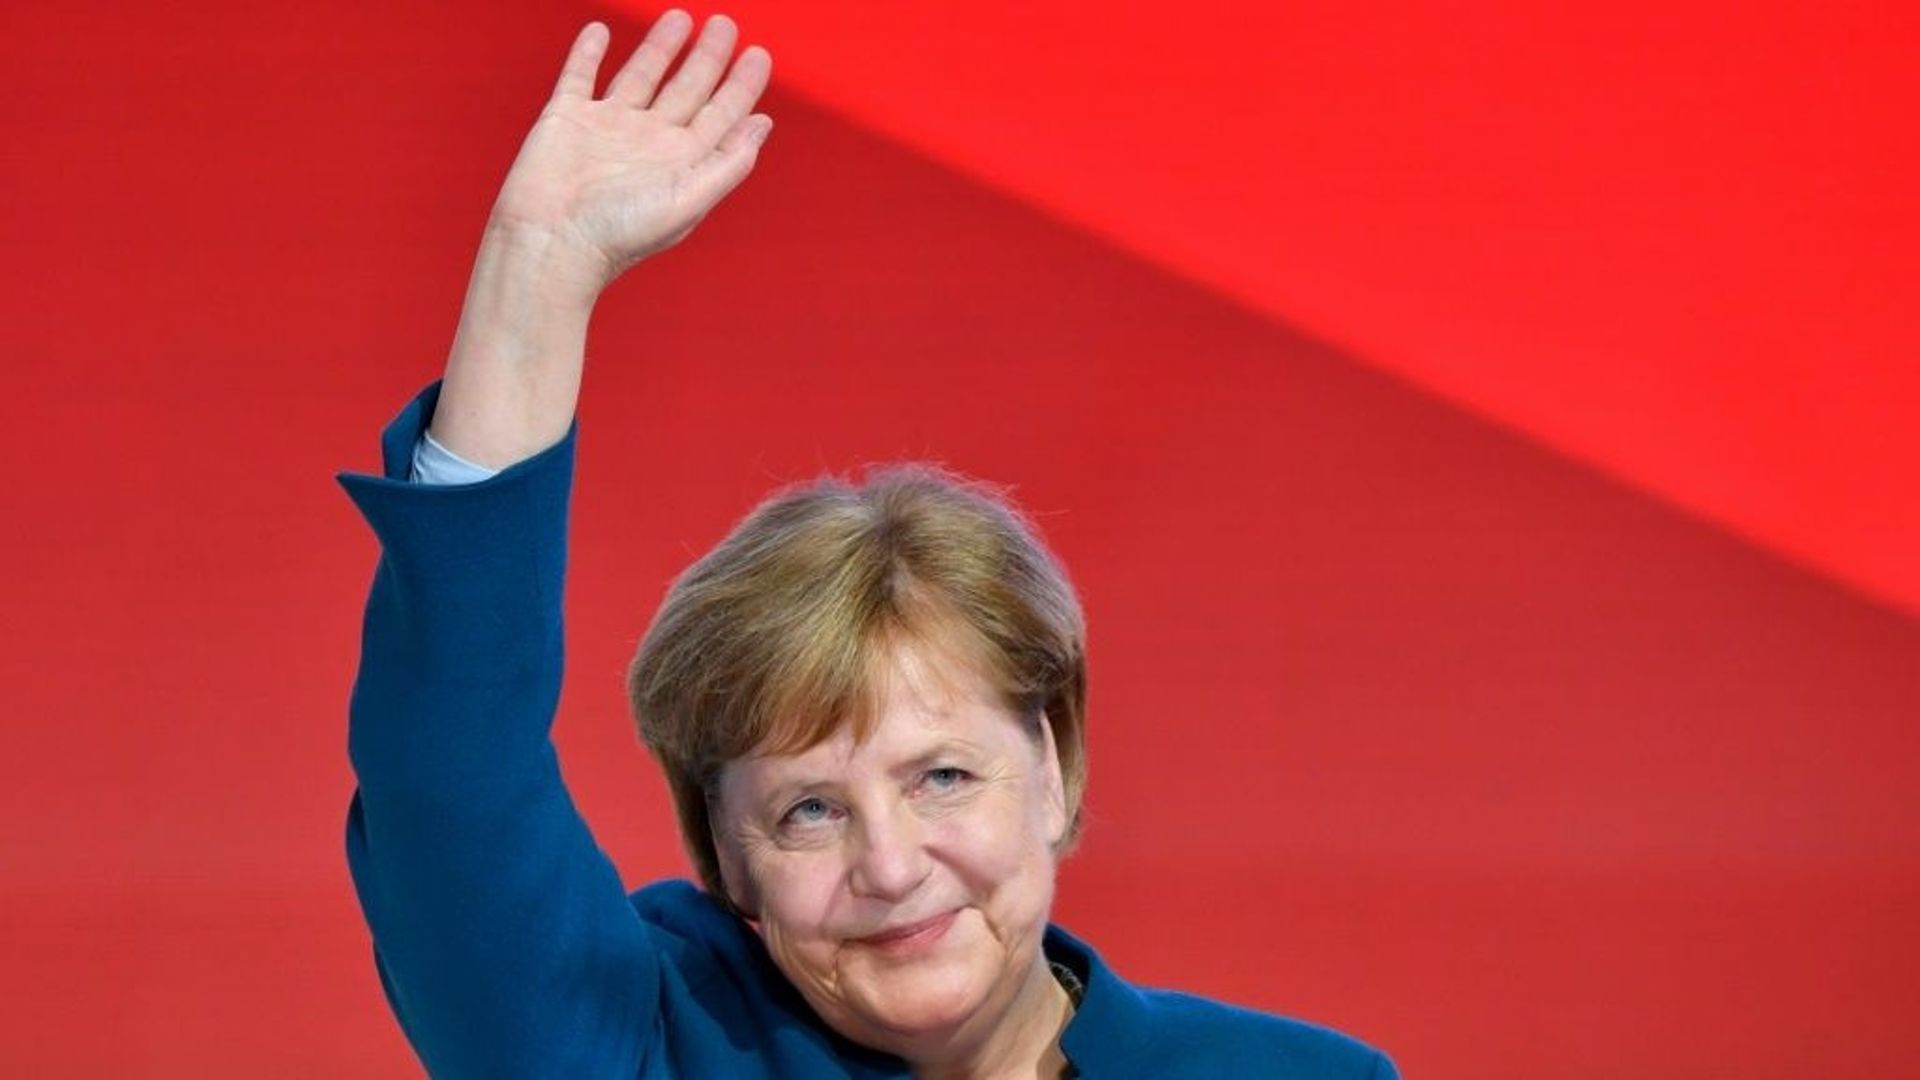 La chancelière allemande Angela Merkel, le 7 décembre 2018 à Hambourg (nord de l'Allemagne)